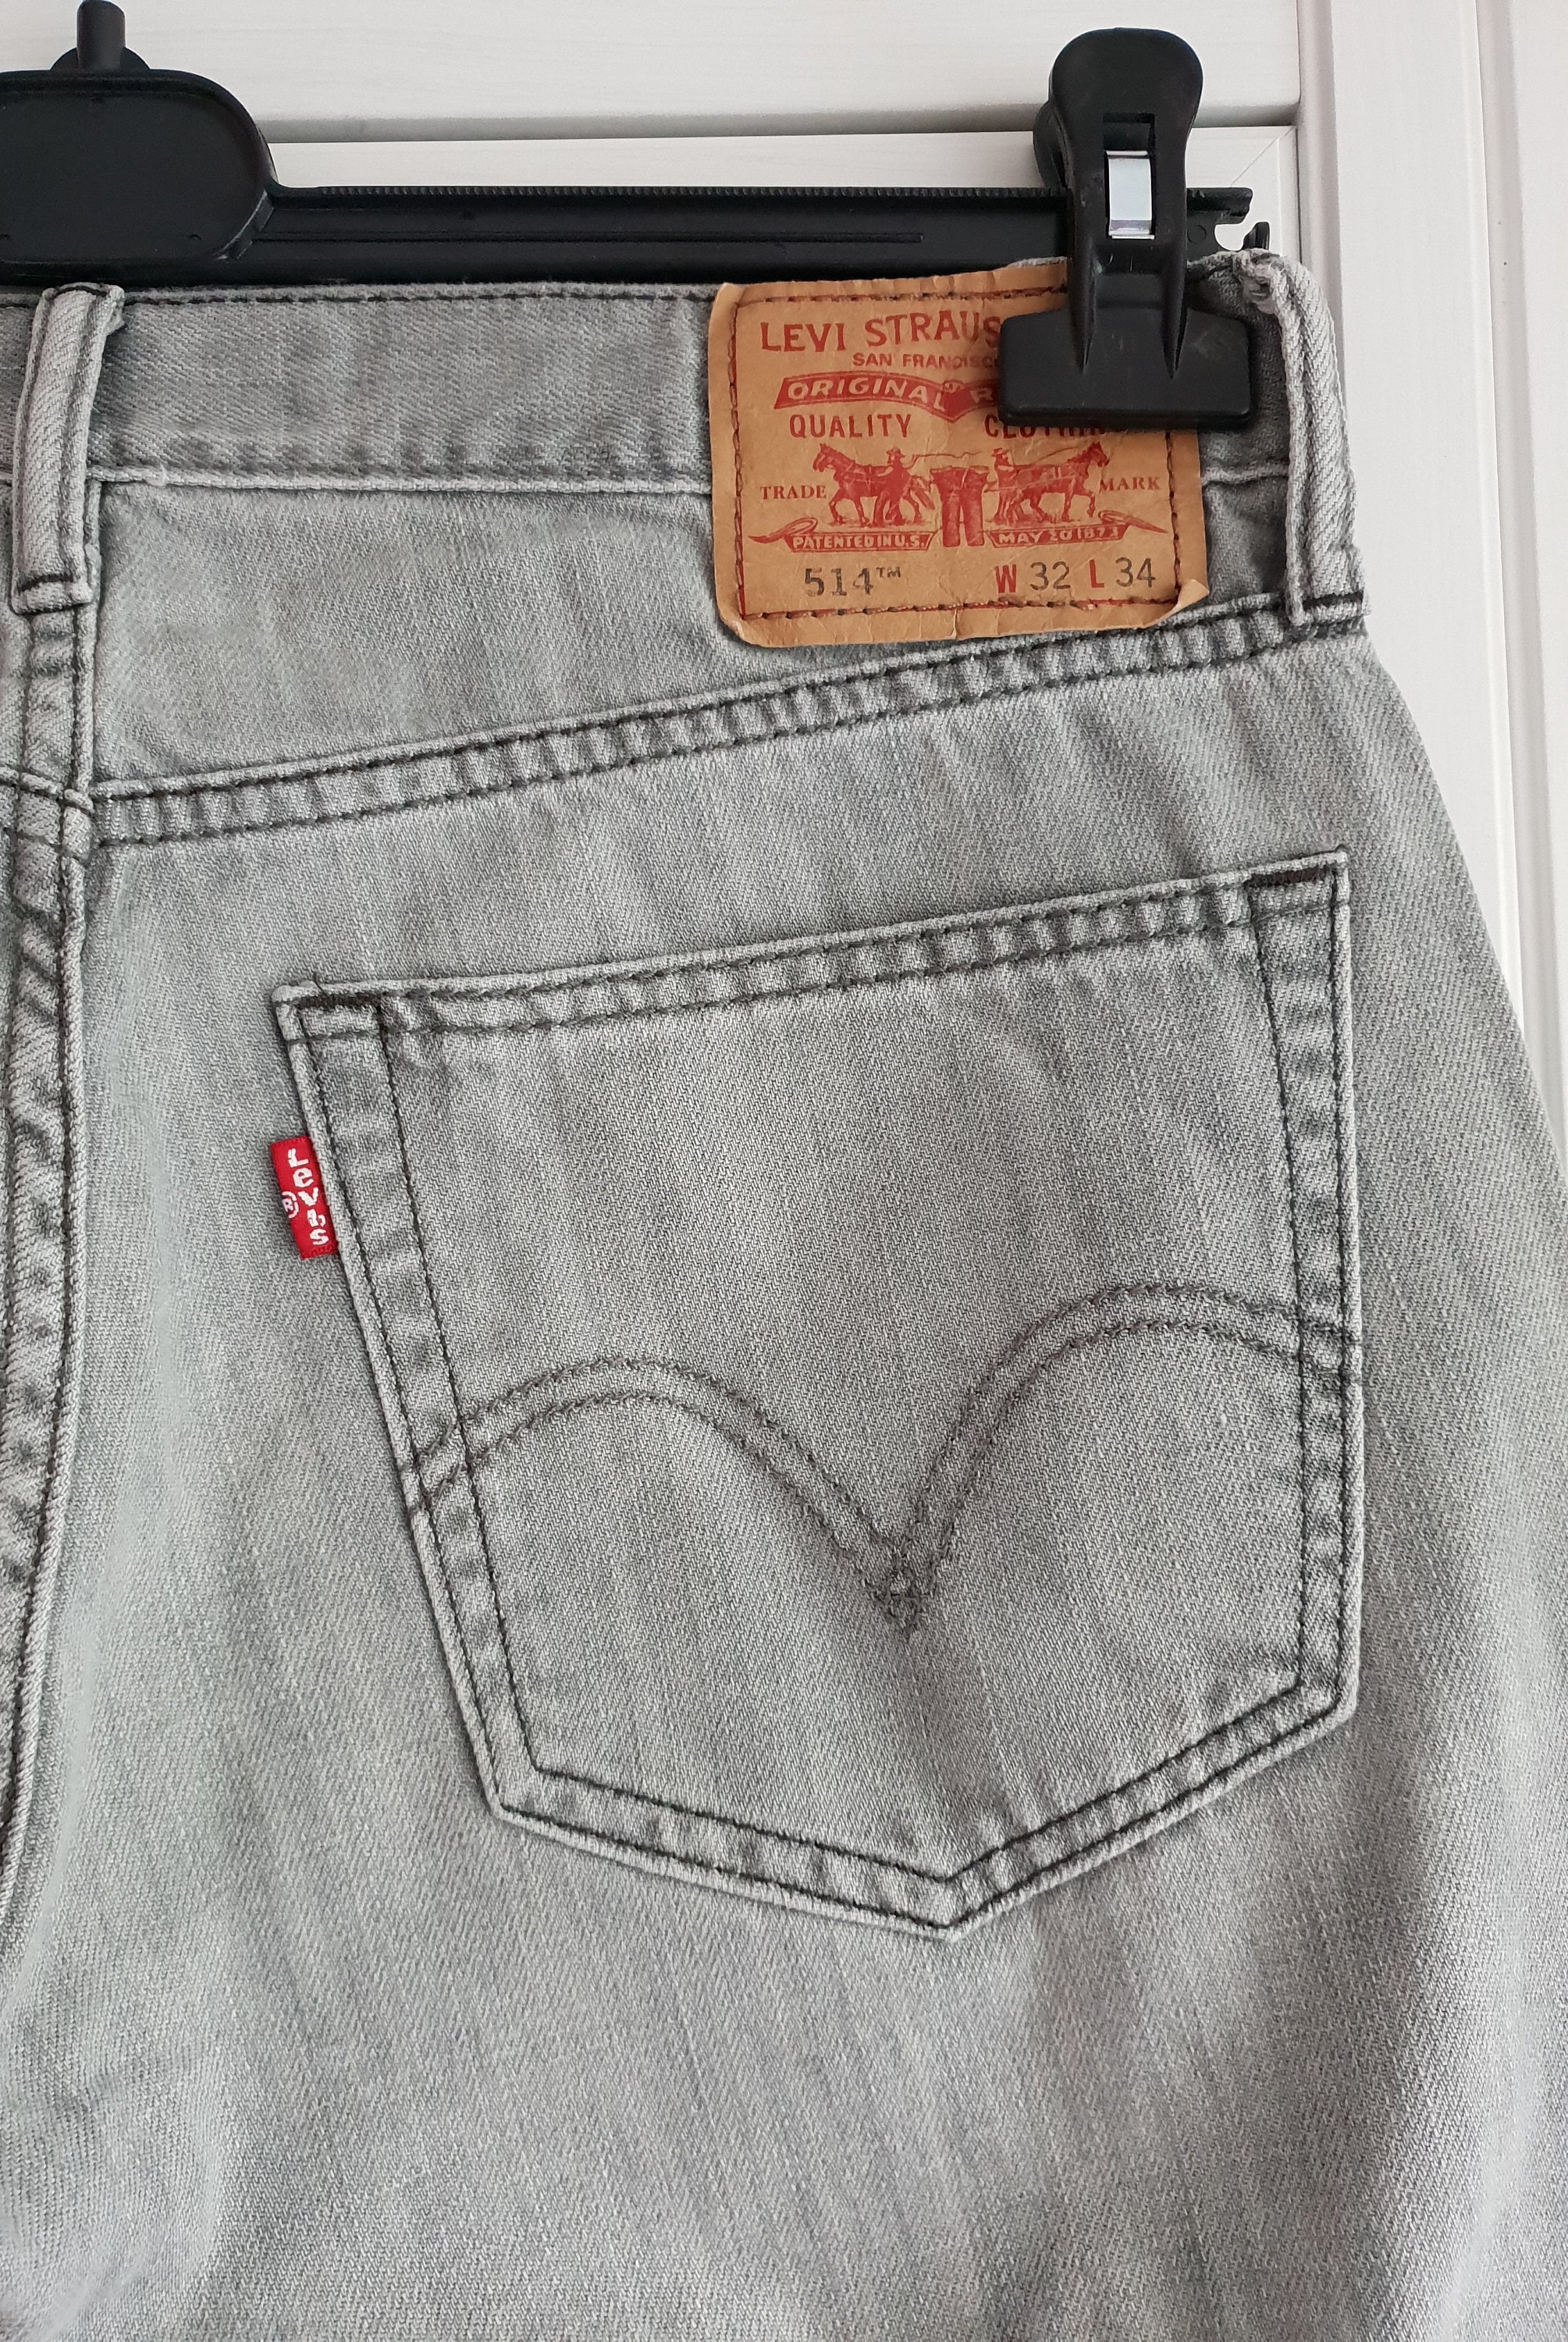 Vintage Levis 514 Jeans Denim Men Women Size L34 X - Etsy